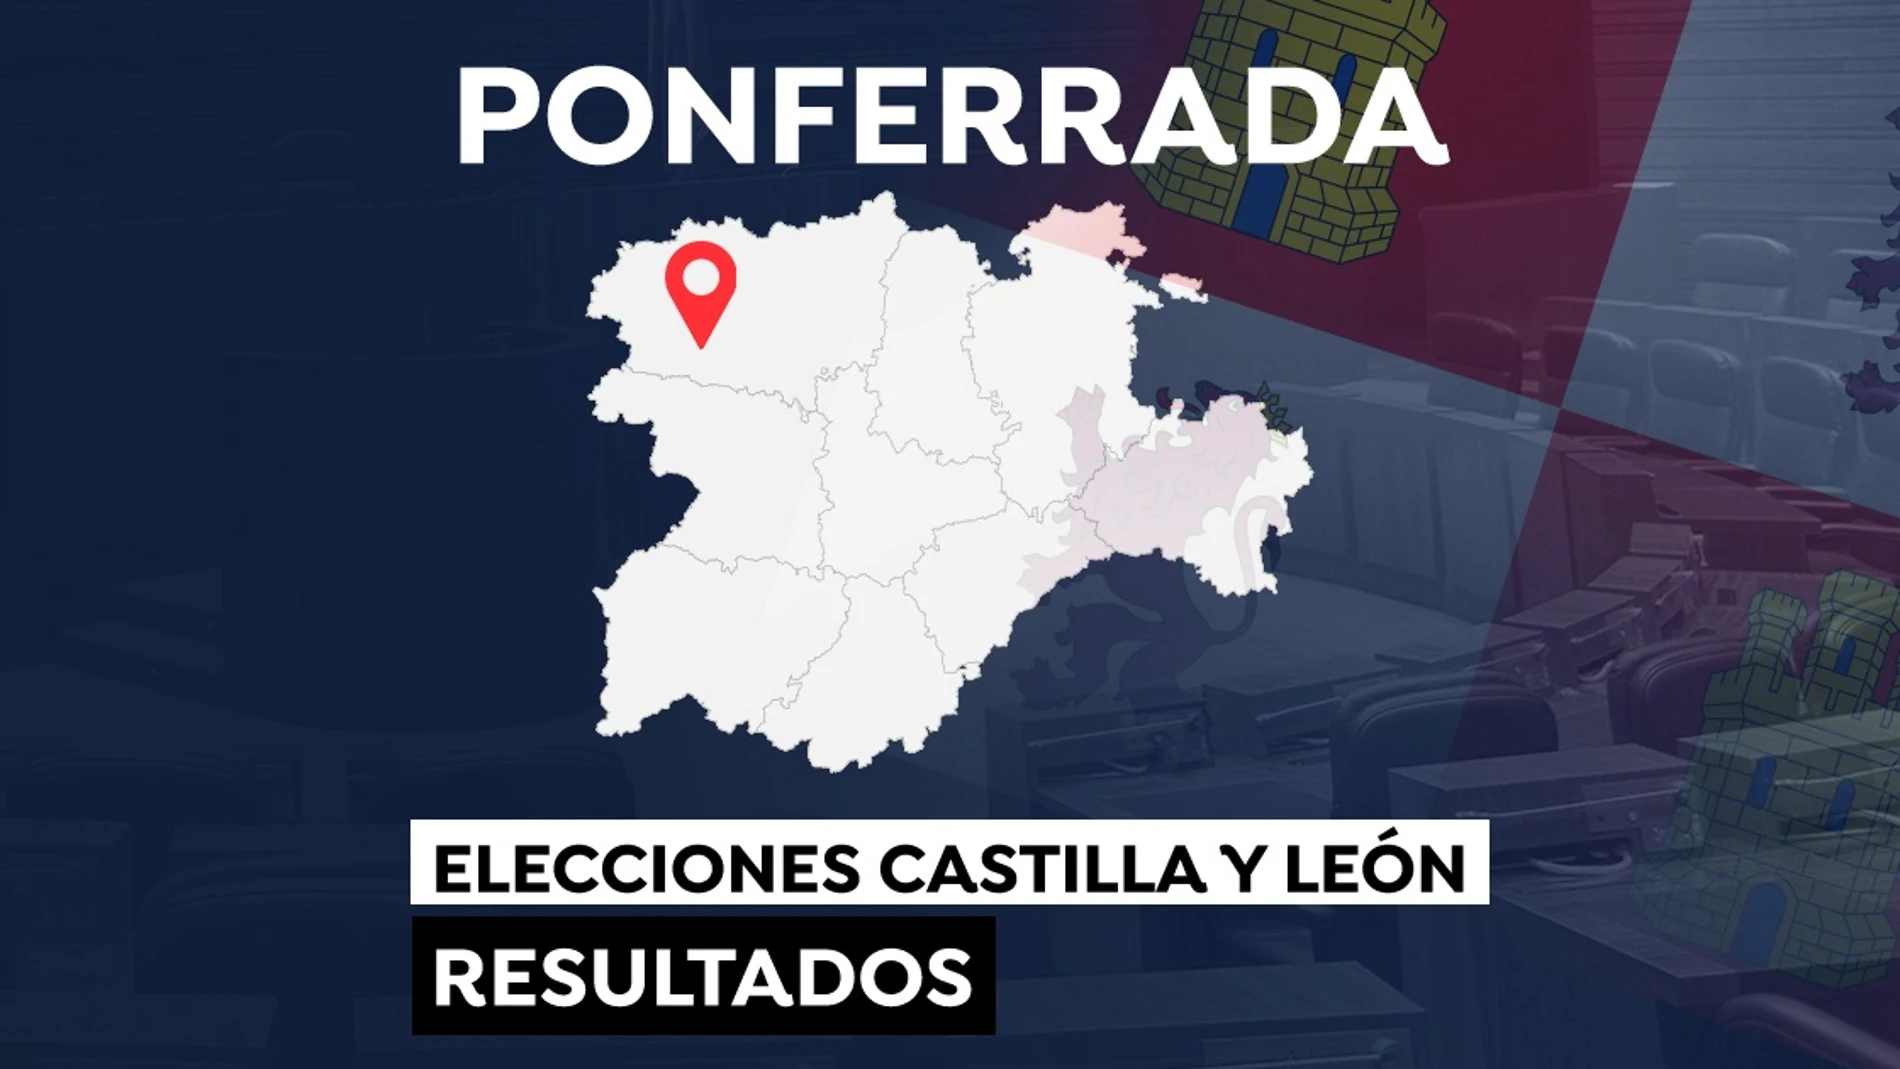 Elecciones a las Cortes de Castilla y León 2022: Resultado en Ponferrada